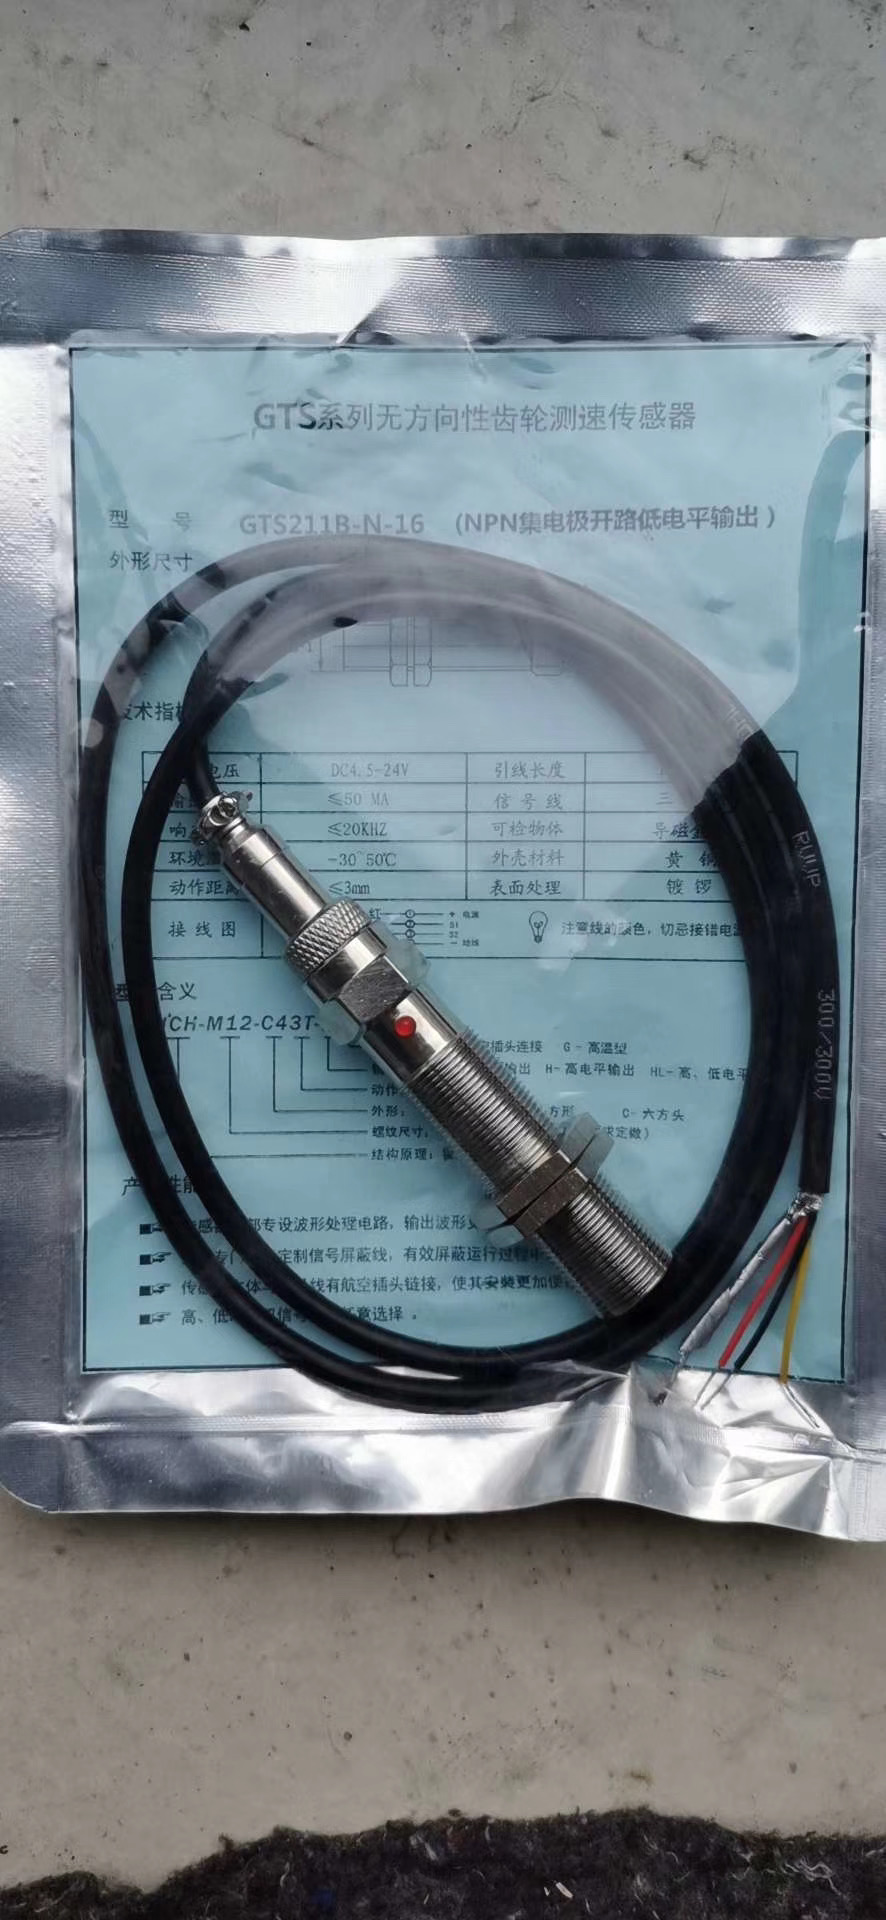 大皮带计量测速轮皮带秤用速度传感器  速度传感器厂家定制  速度传感器供应商